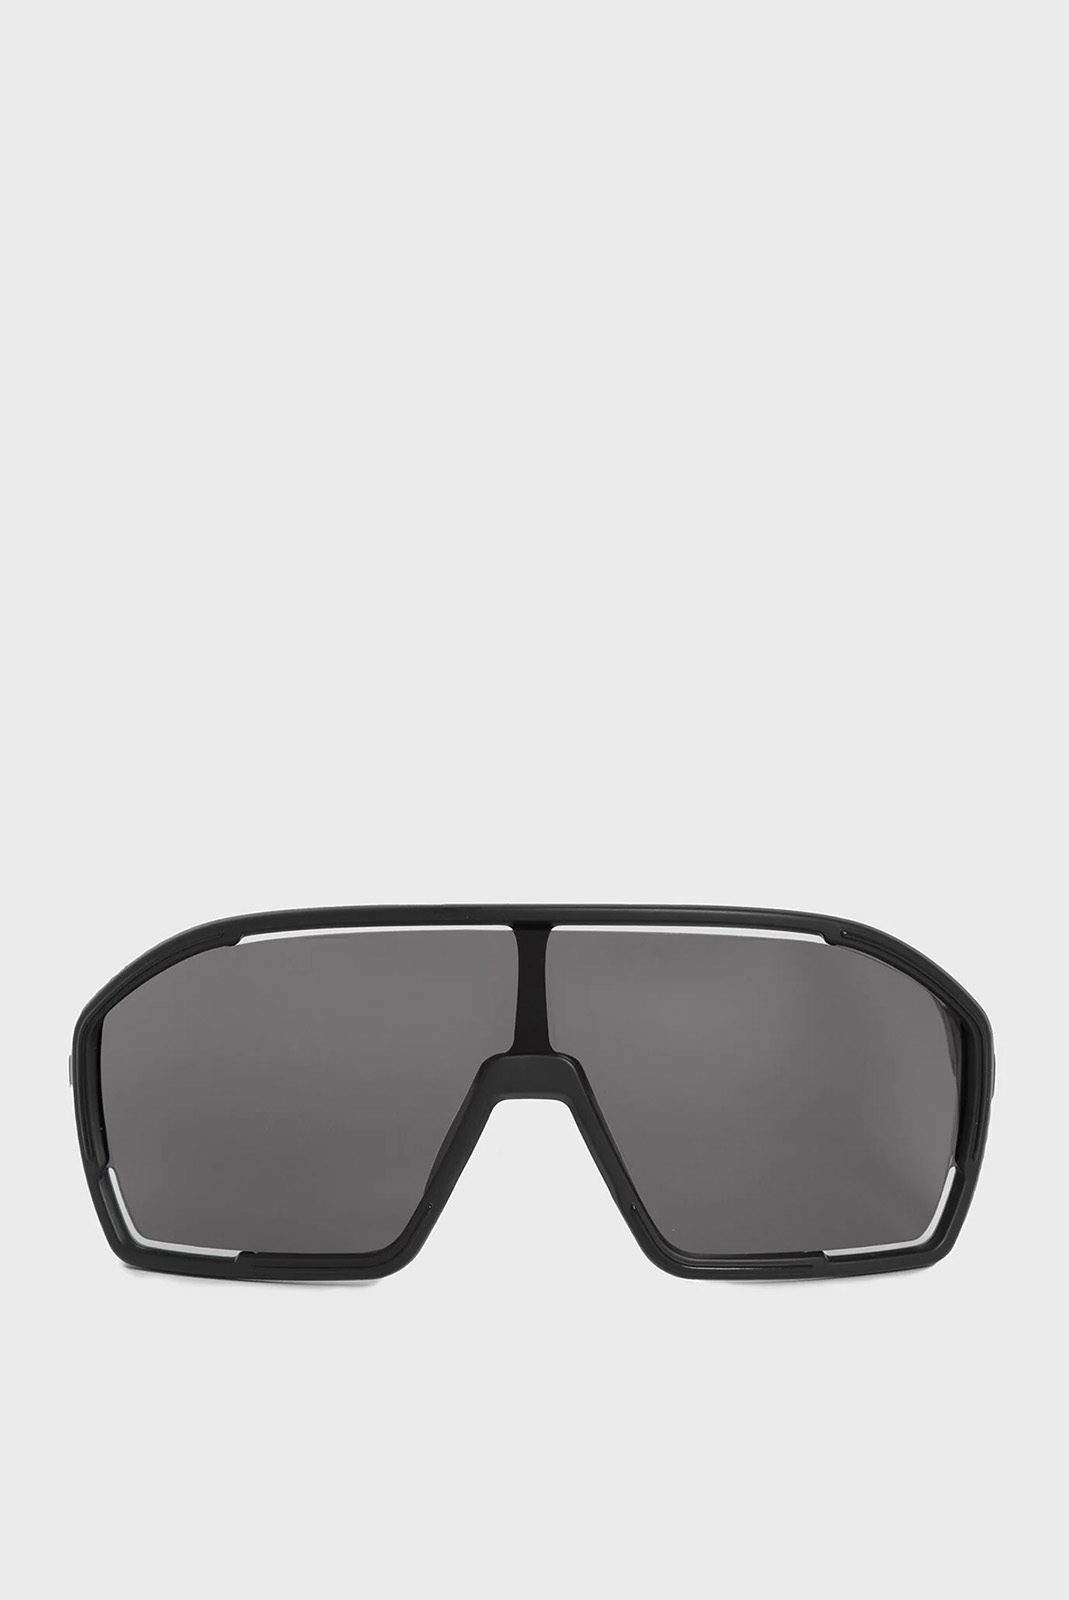 Сонцезахисні окуляри Alpina BONFIRE A8687-31